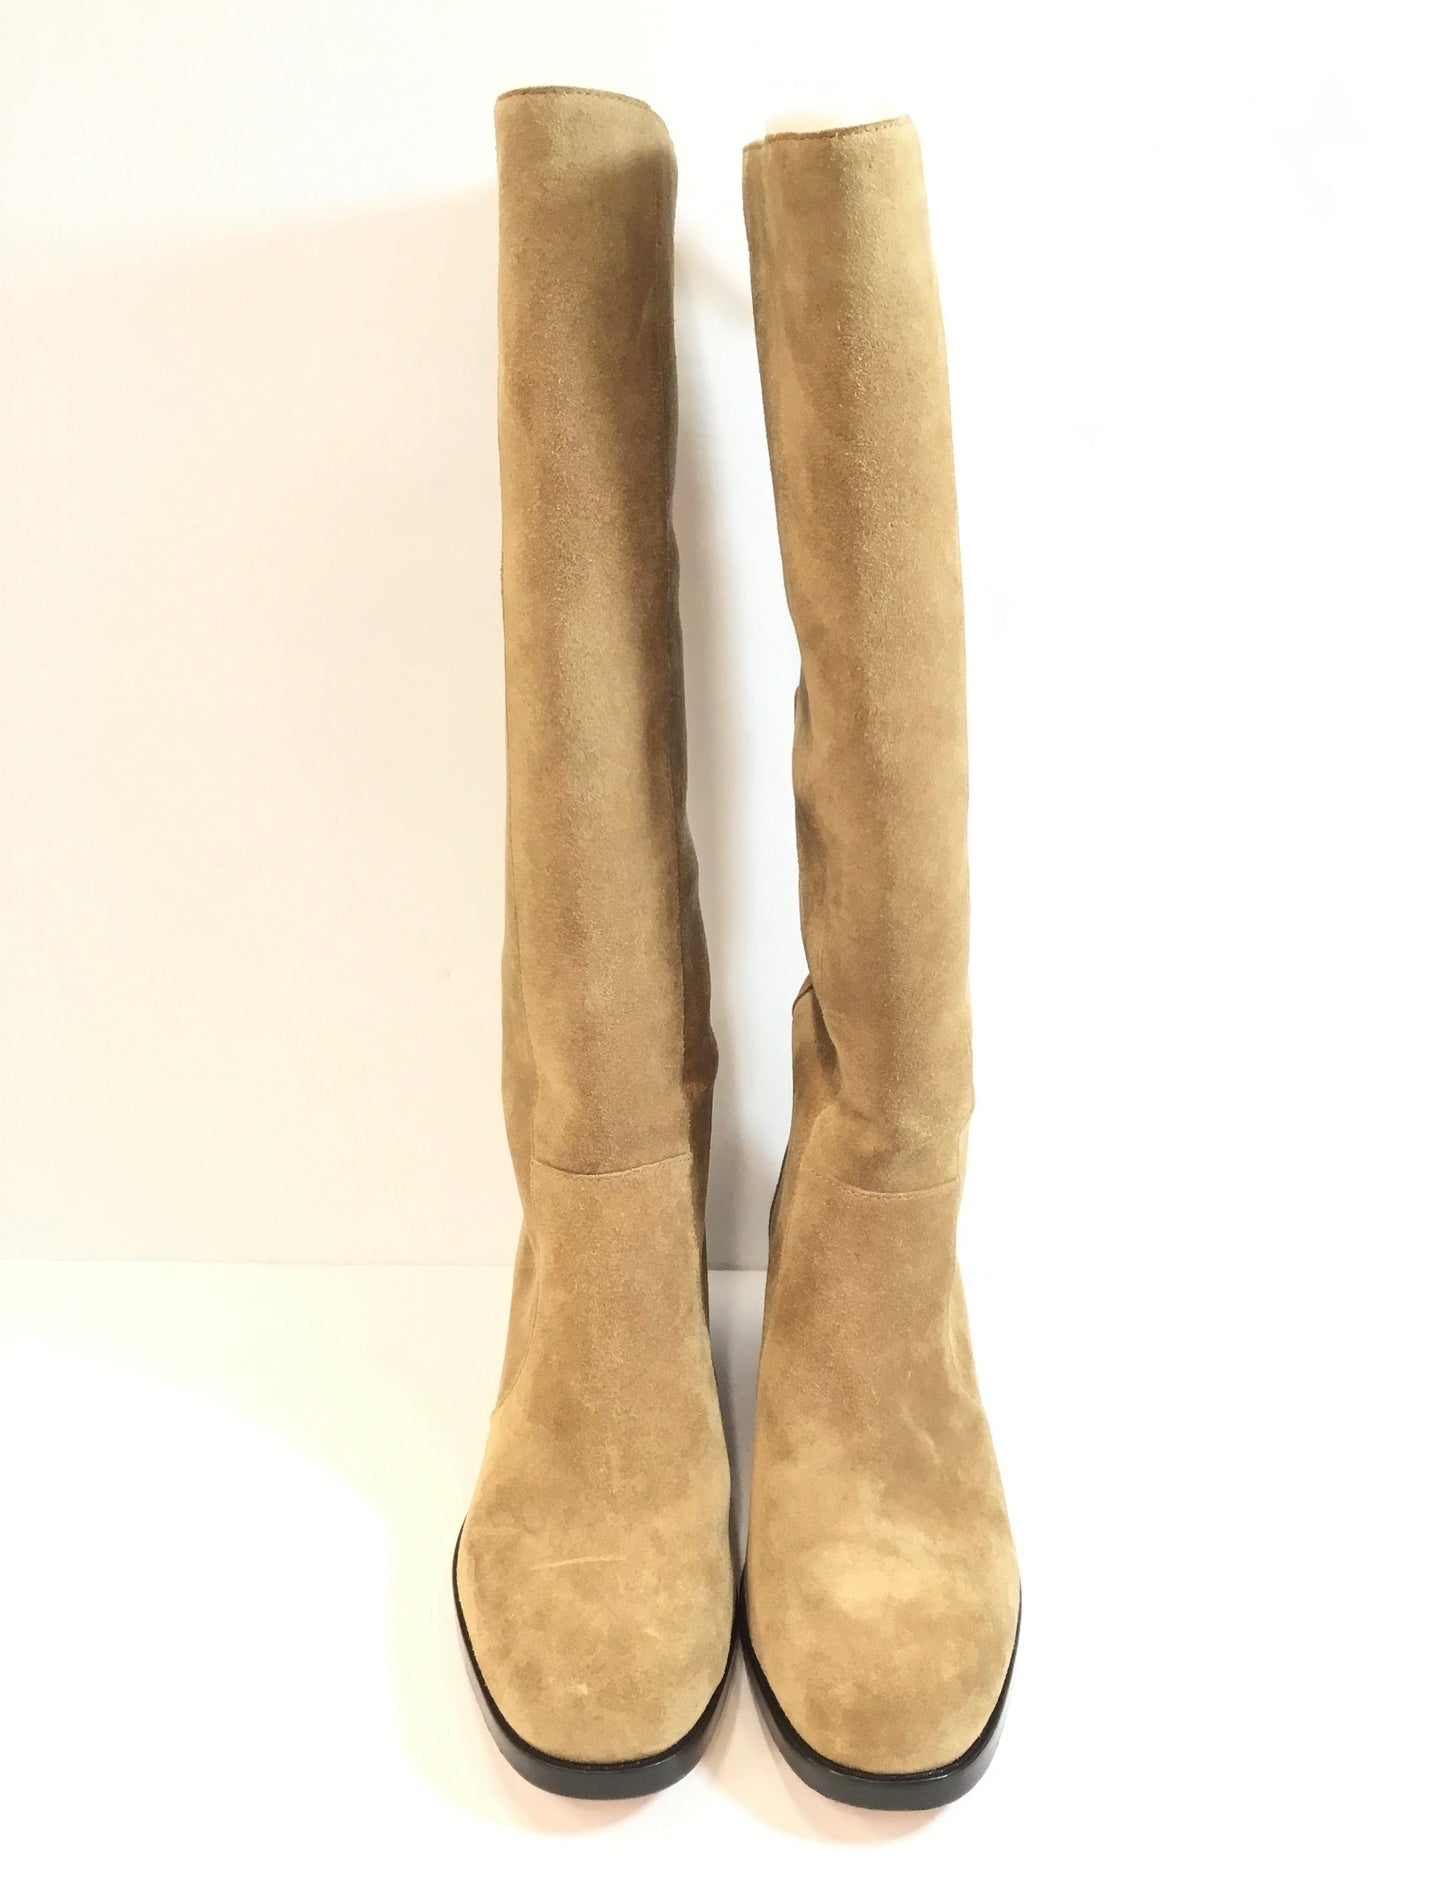 Boots Knee Heels By Via Spiga  Size: 8.5